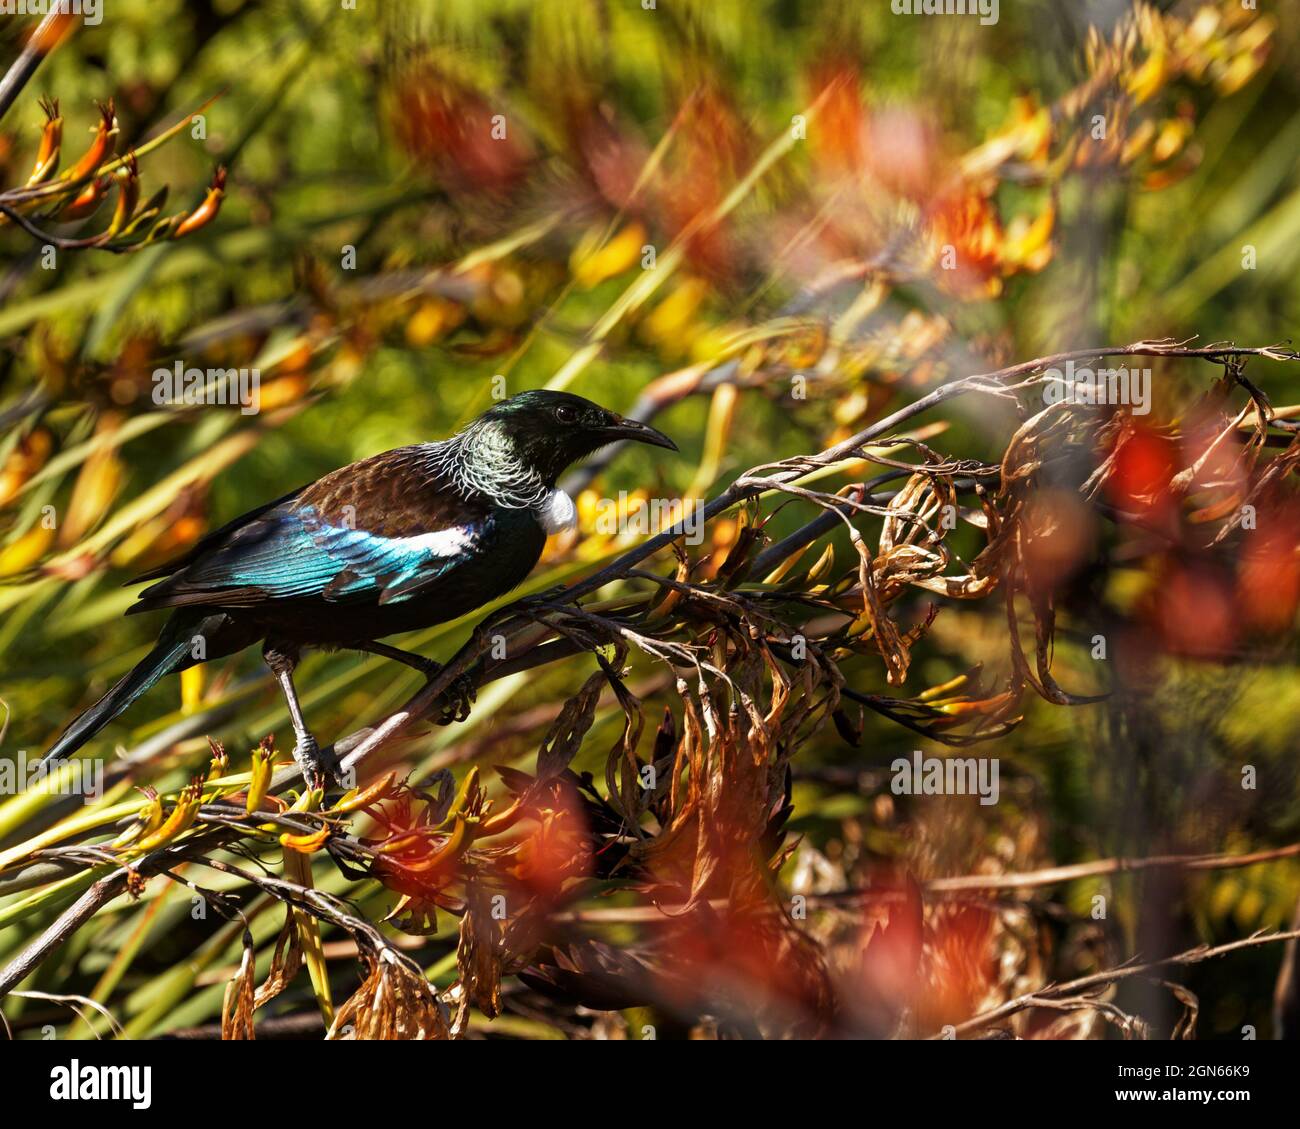 TUI, endemischer Singvögel Neuseelands, auf einer Flachspflanze, Profil Stockfoto